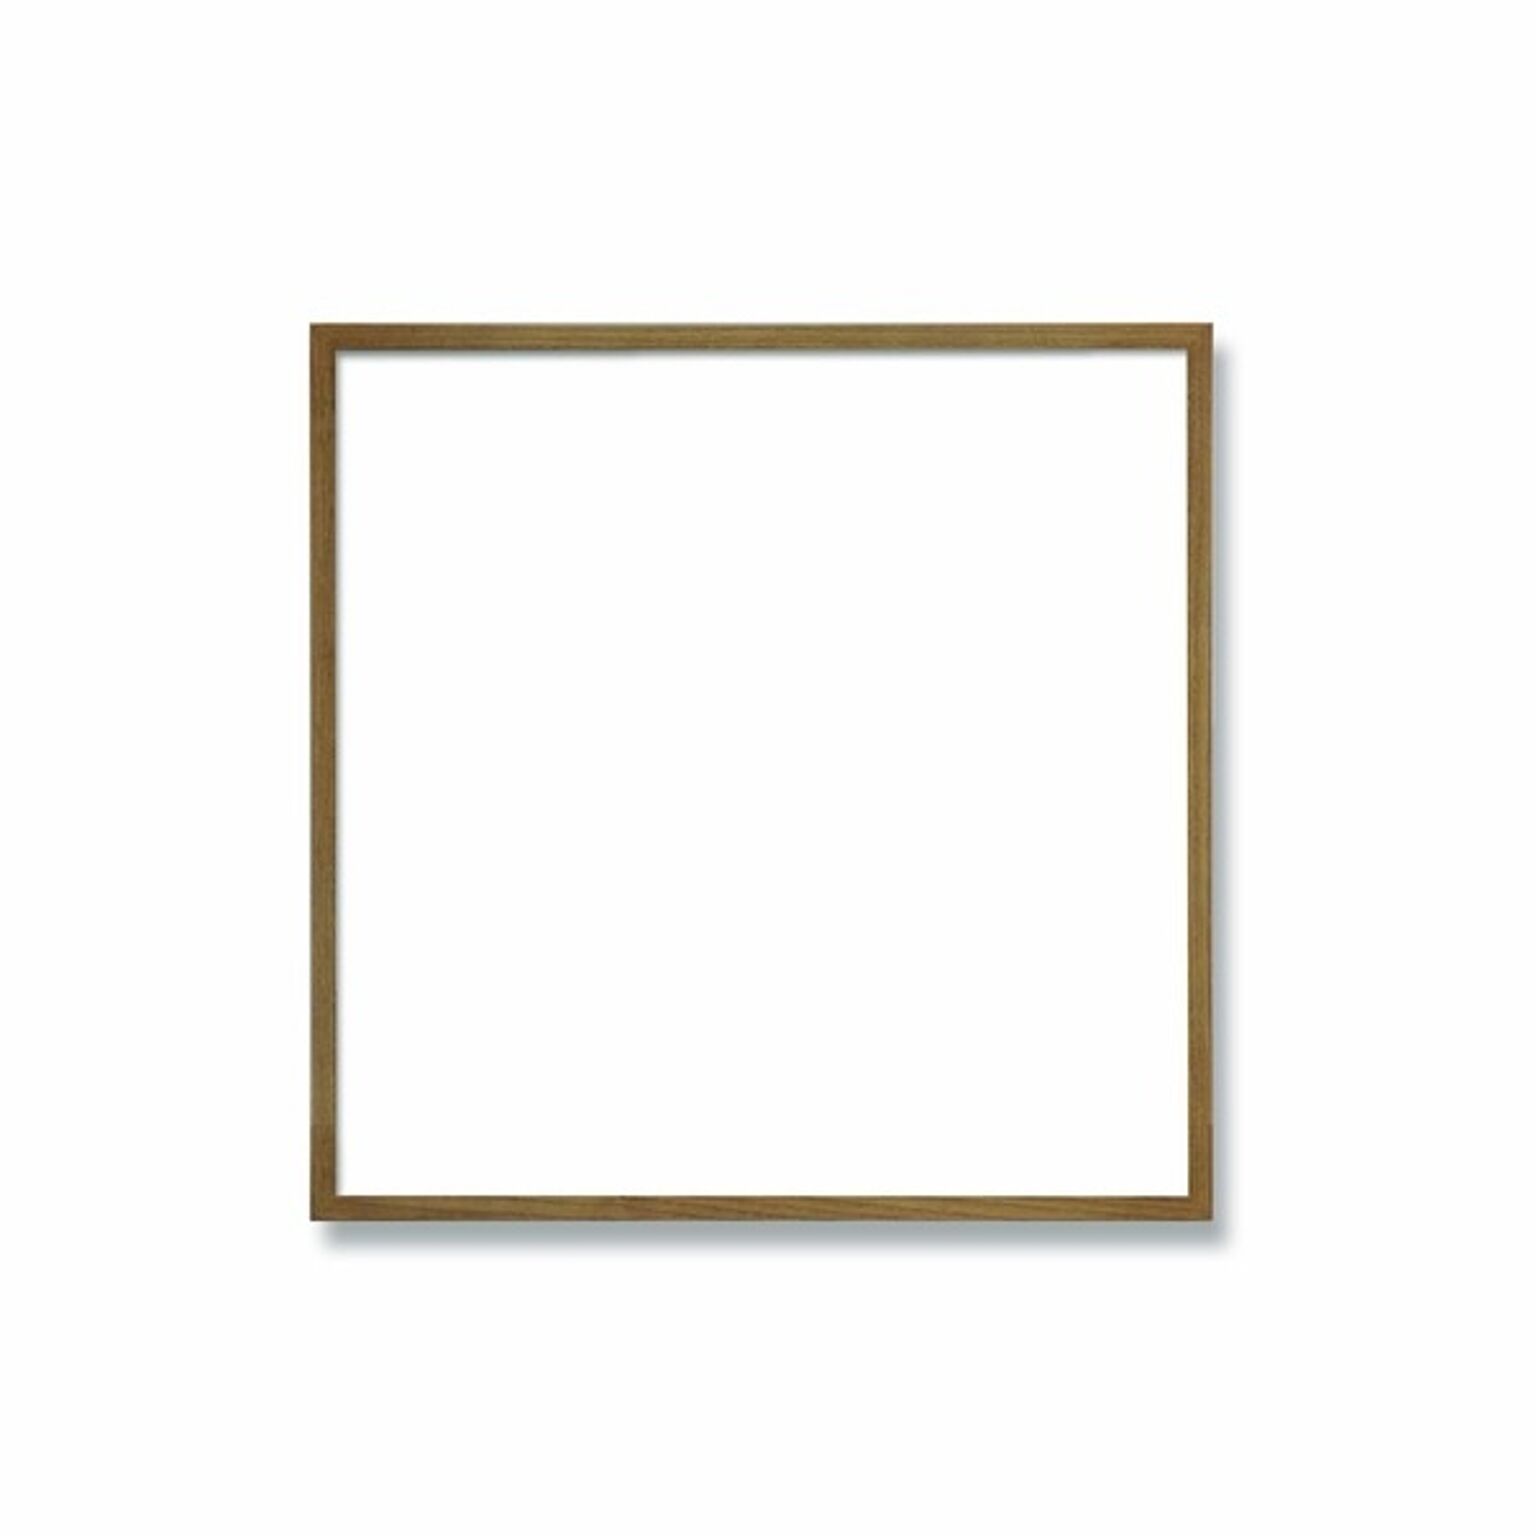 【角額】細い木製正方形額・壁掛けひも・紫外線から作品を守るUVカットアクリル付き　■9102 300角(300×300mm)「茶」